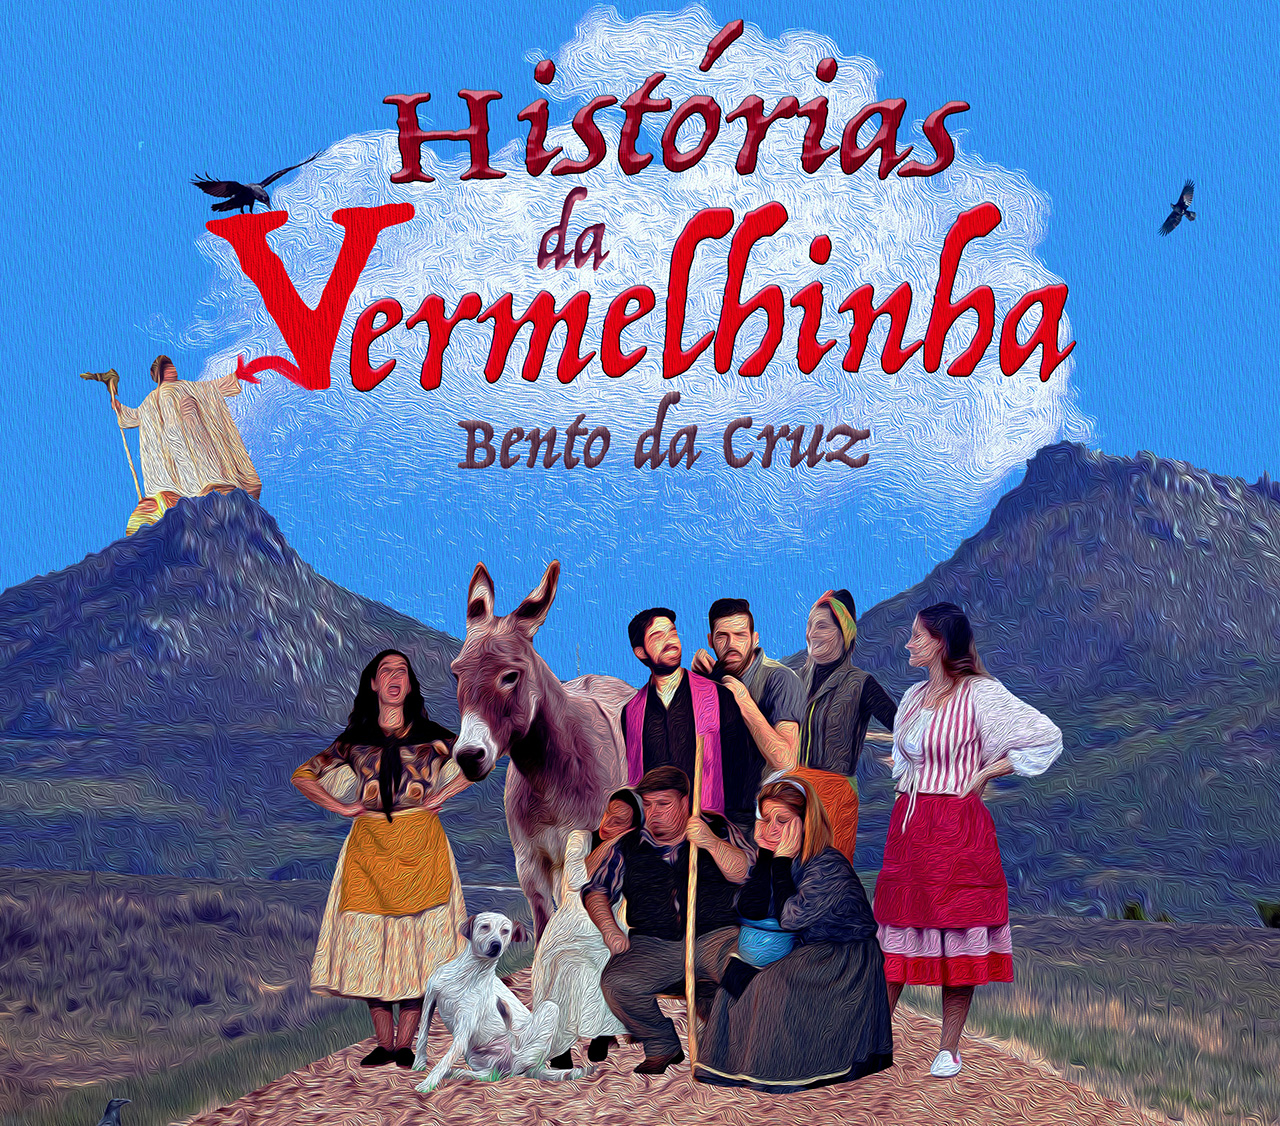 Boticas recebe estreia da peça “Histórias da Vermelhinha”